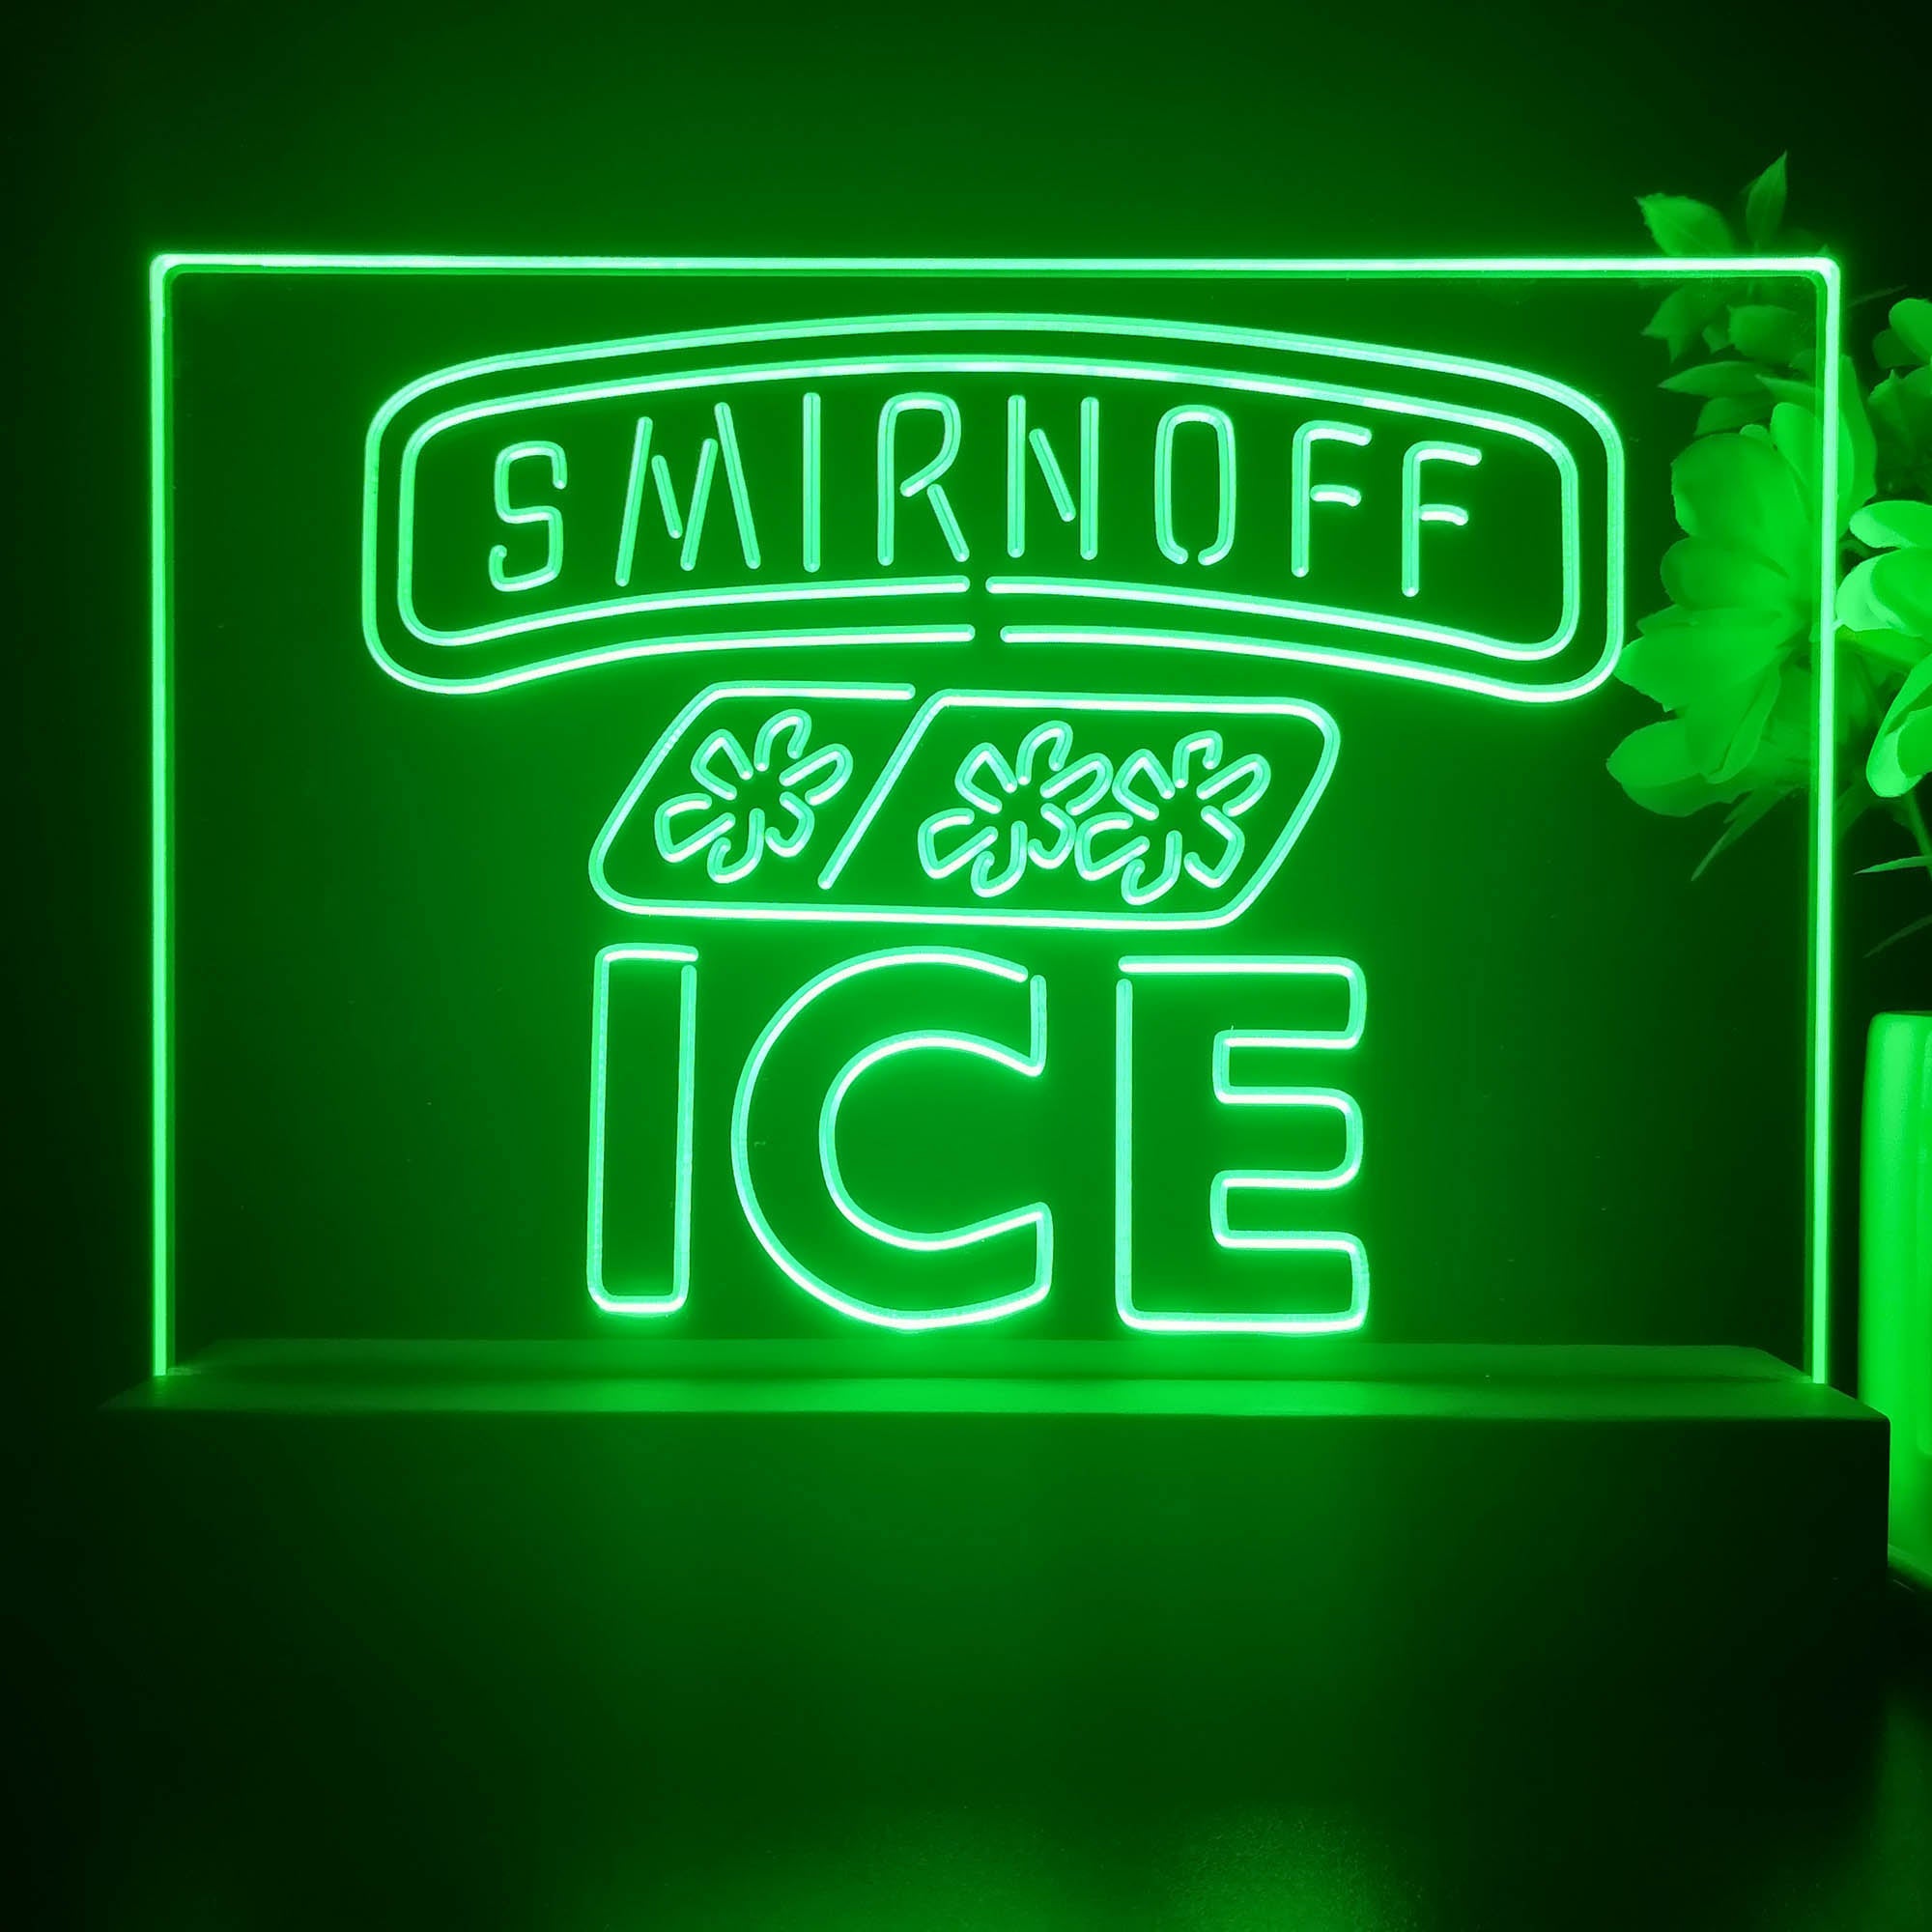 Smirnoff Ice Beverages Neon Sign Pub Bar Decor Lamp